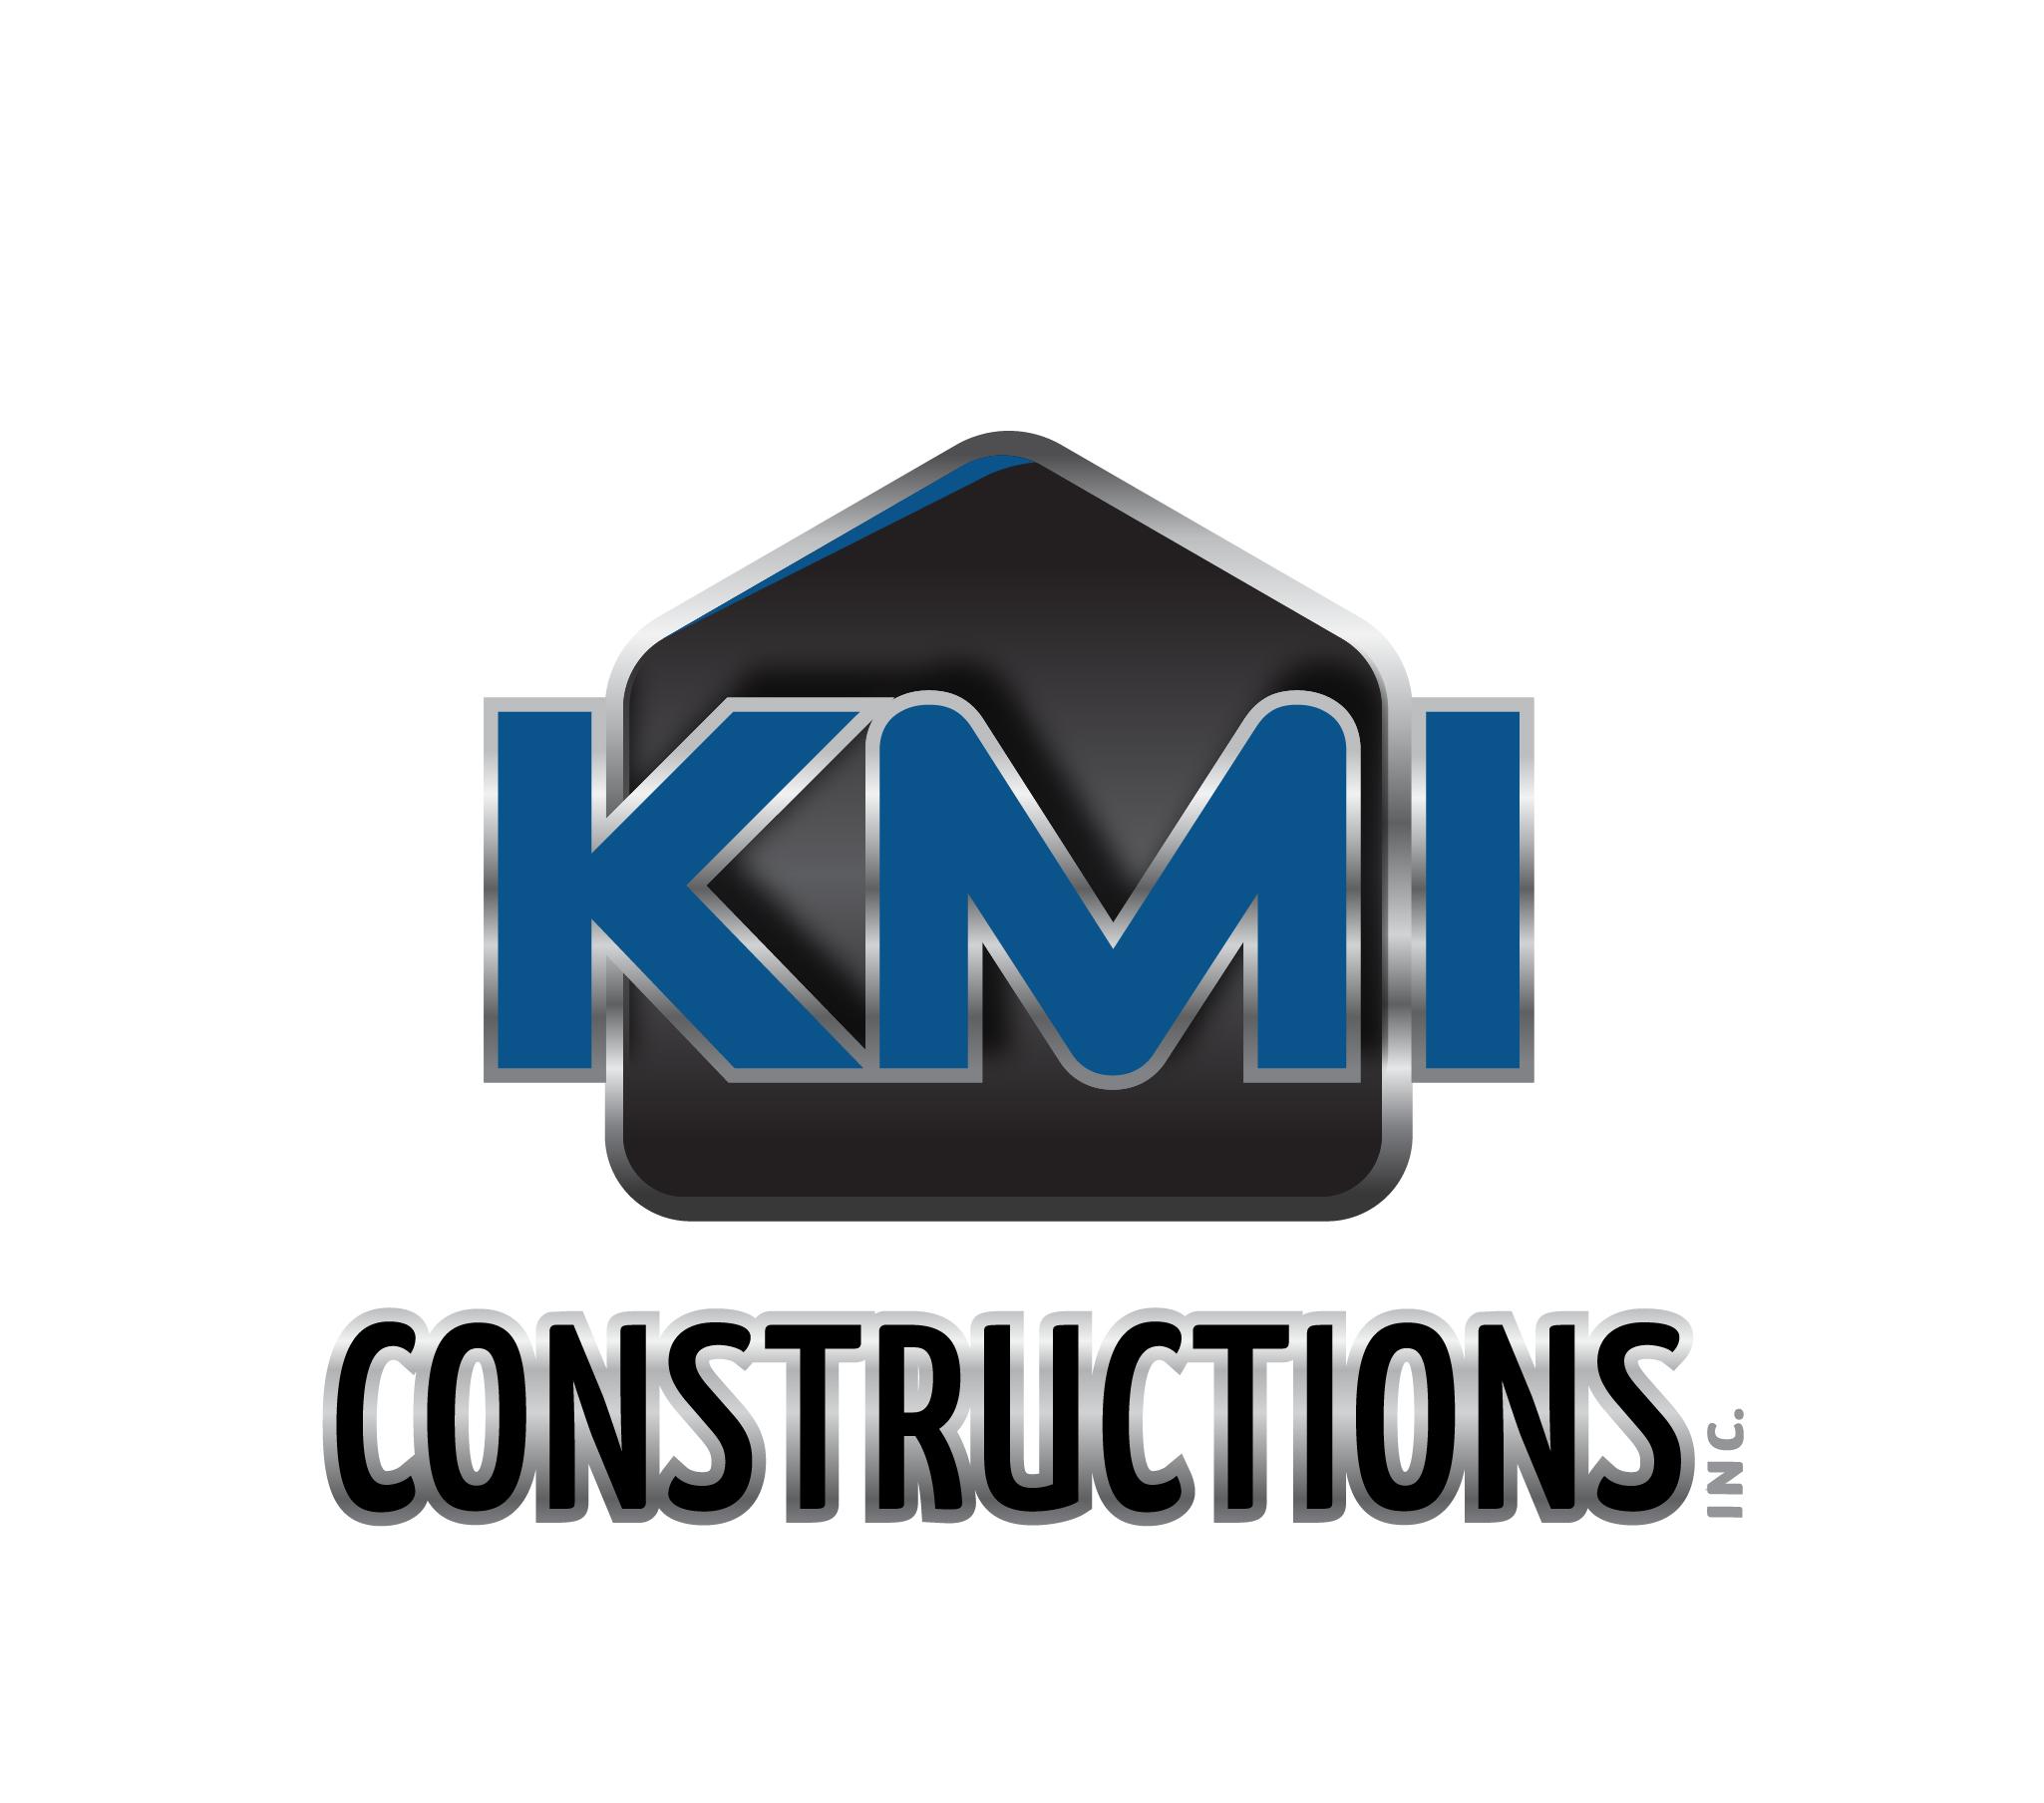 KMI CONSTRUCTIONS INC.